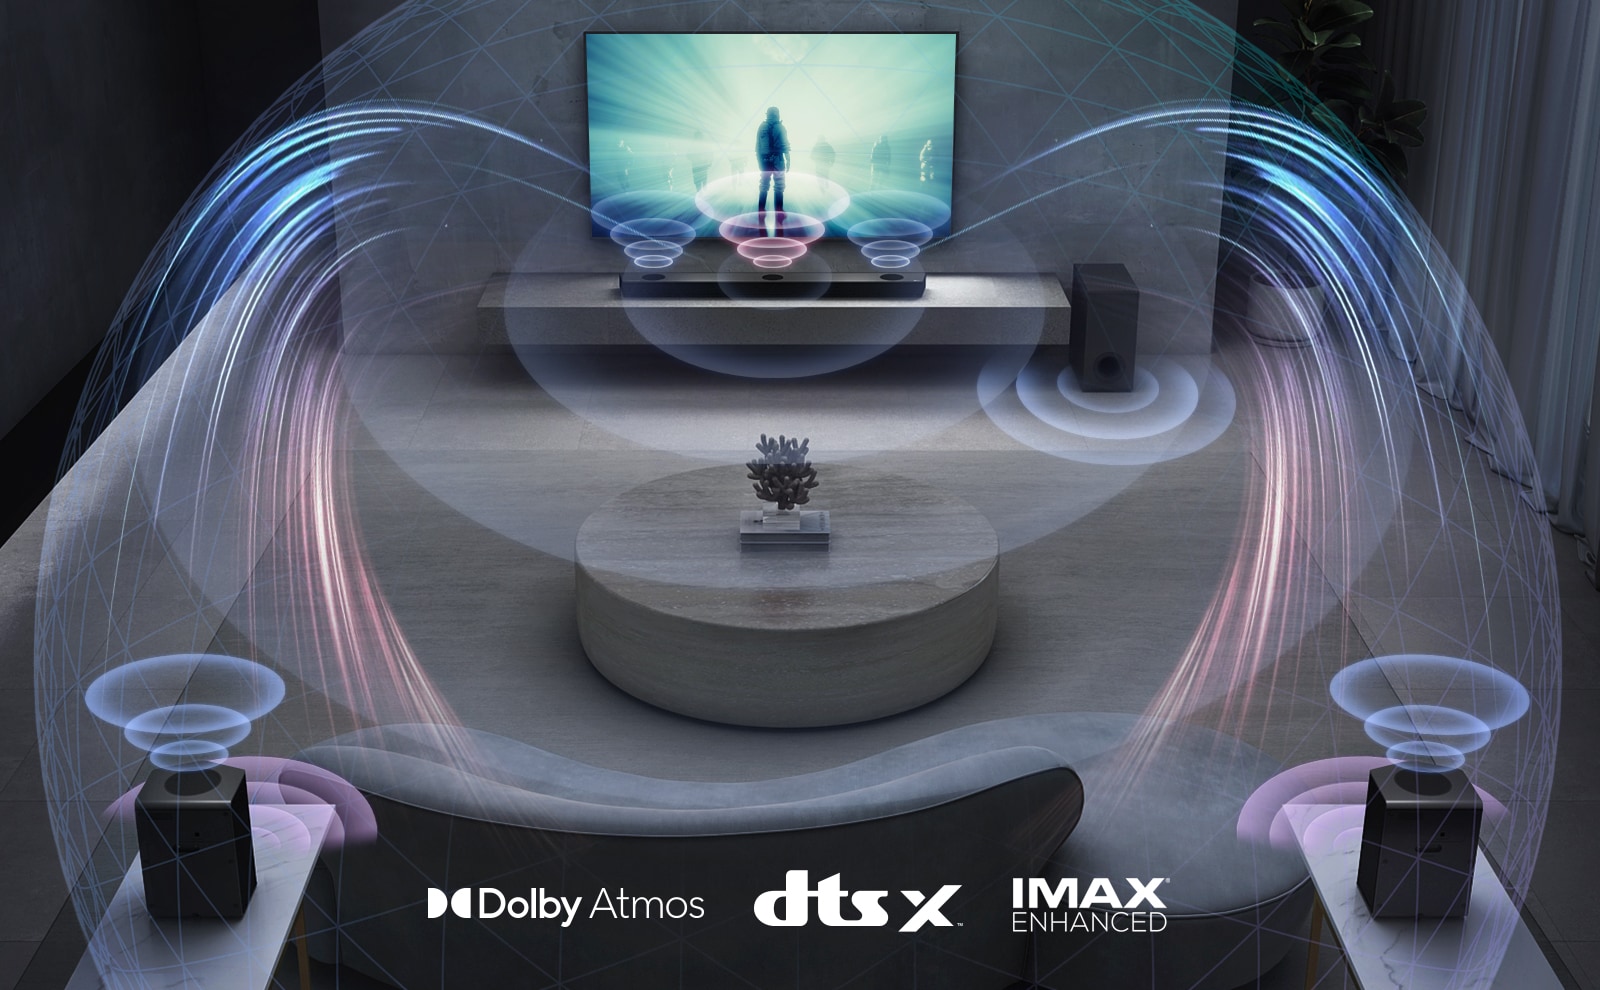 In de woonkamer hangt een LG TV aan de muur. Er speelt een film op de tv. De LG soundbar staat recht onder de tv op een grijze plank met een subwoofer ernaast. Een set van 2 achterluidsprekers staat achter in de woonkamer. Geluidseffecten komen uit alle luidsprekers. Dolby Atmos en DTS:X, IMAX Enhanced logo in het midden onderaan het beeld.